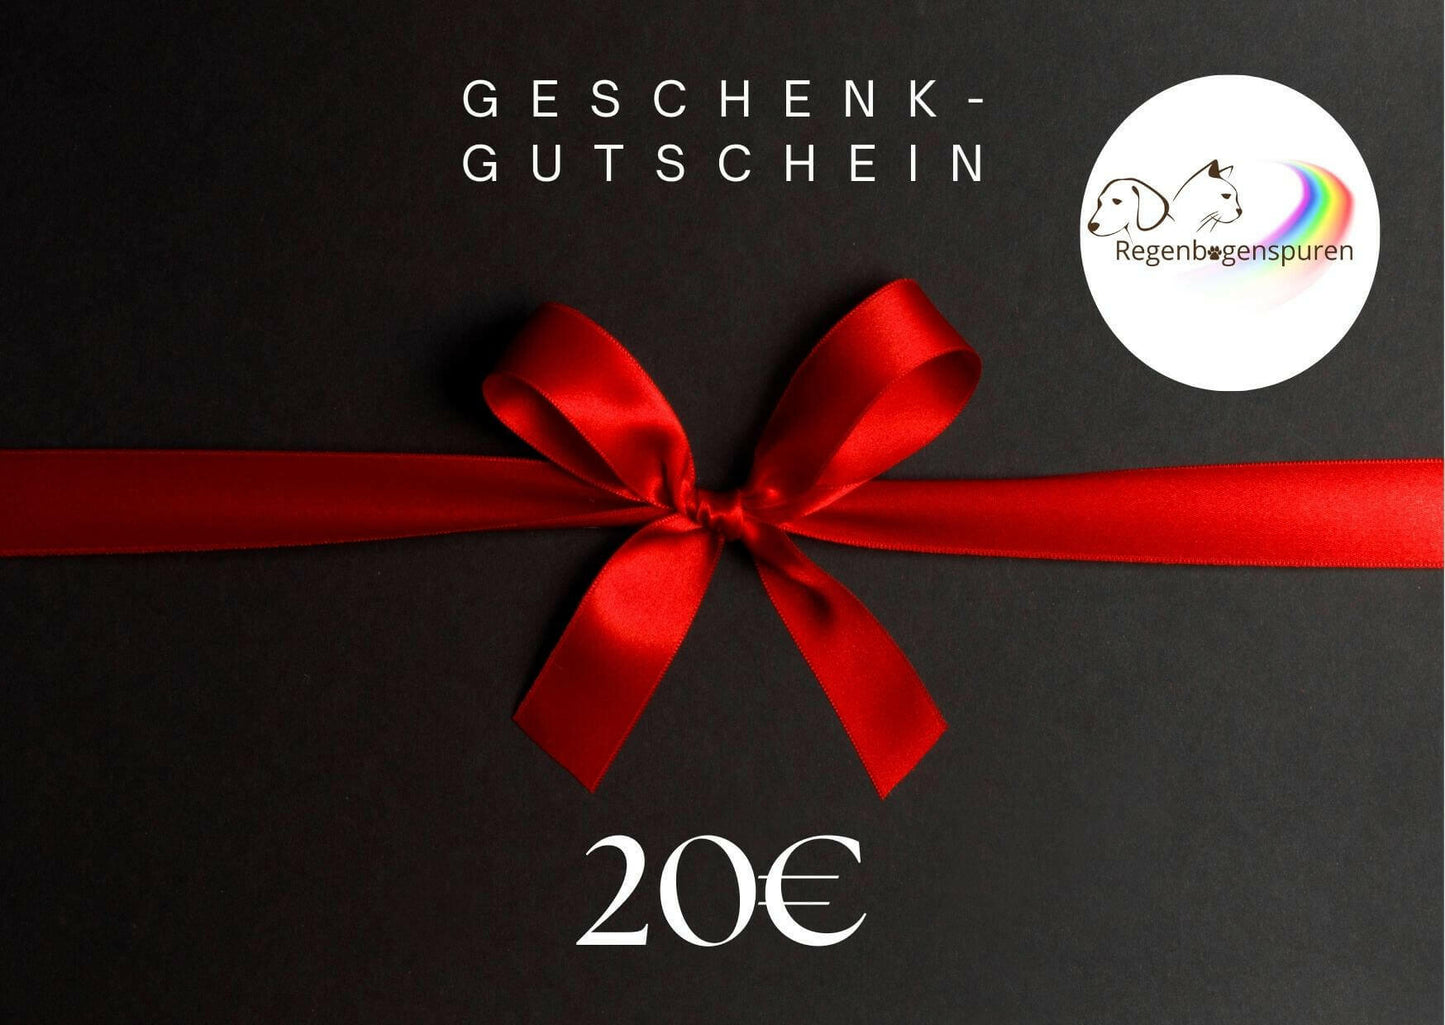 Schwarzer Geschenkgutschein für 20 Euro mit roter Schleife und Logo von Regenbogenspuren.